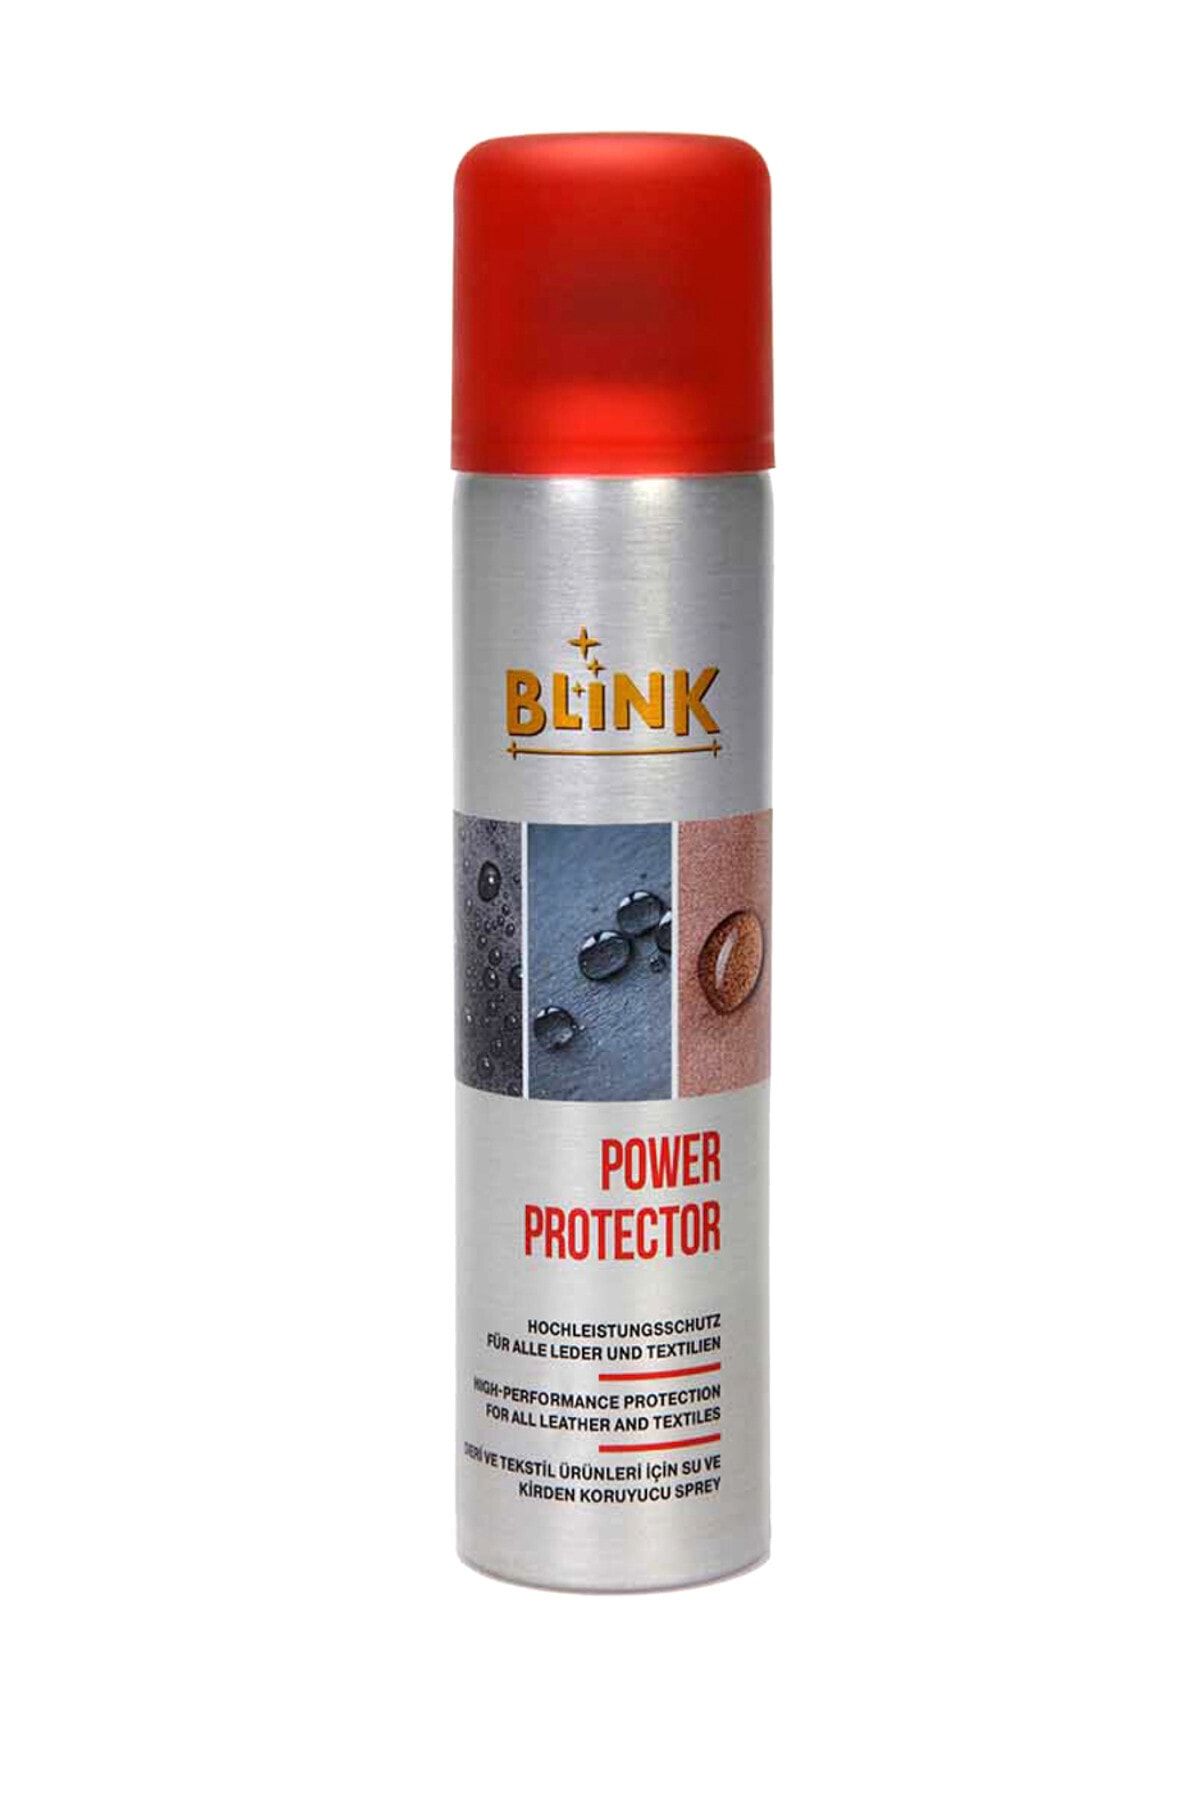 Blink Power Protector Deri Için Su Ve Kirden Koruyucu Sprey